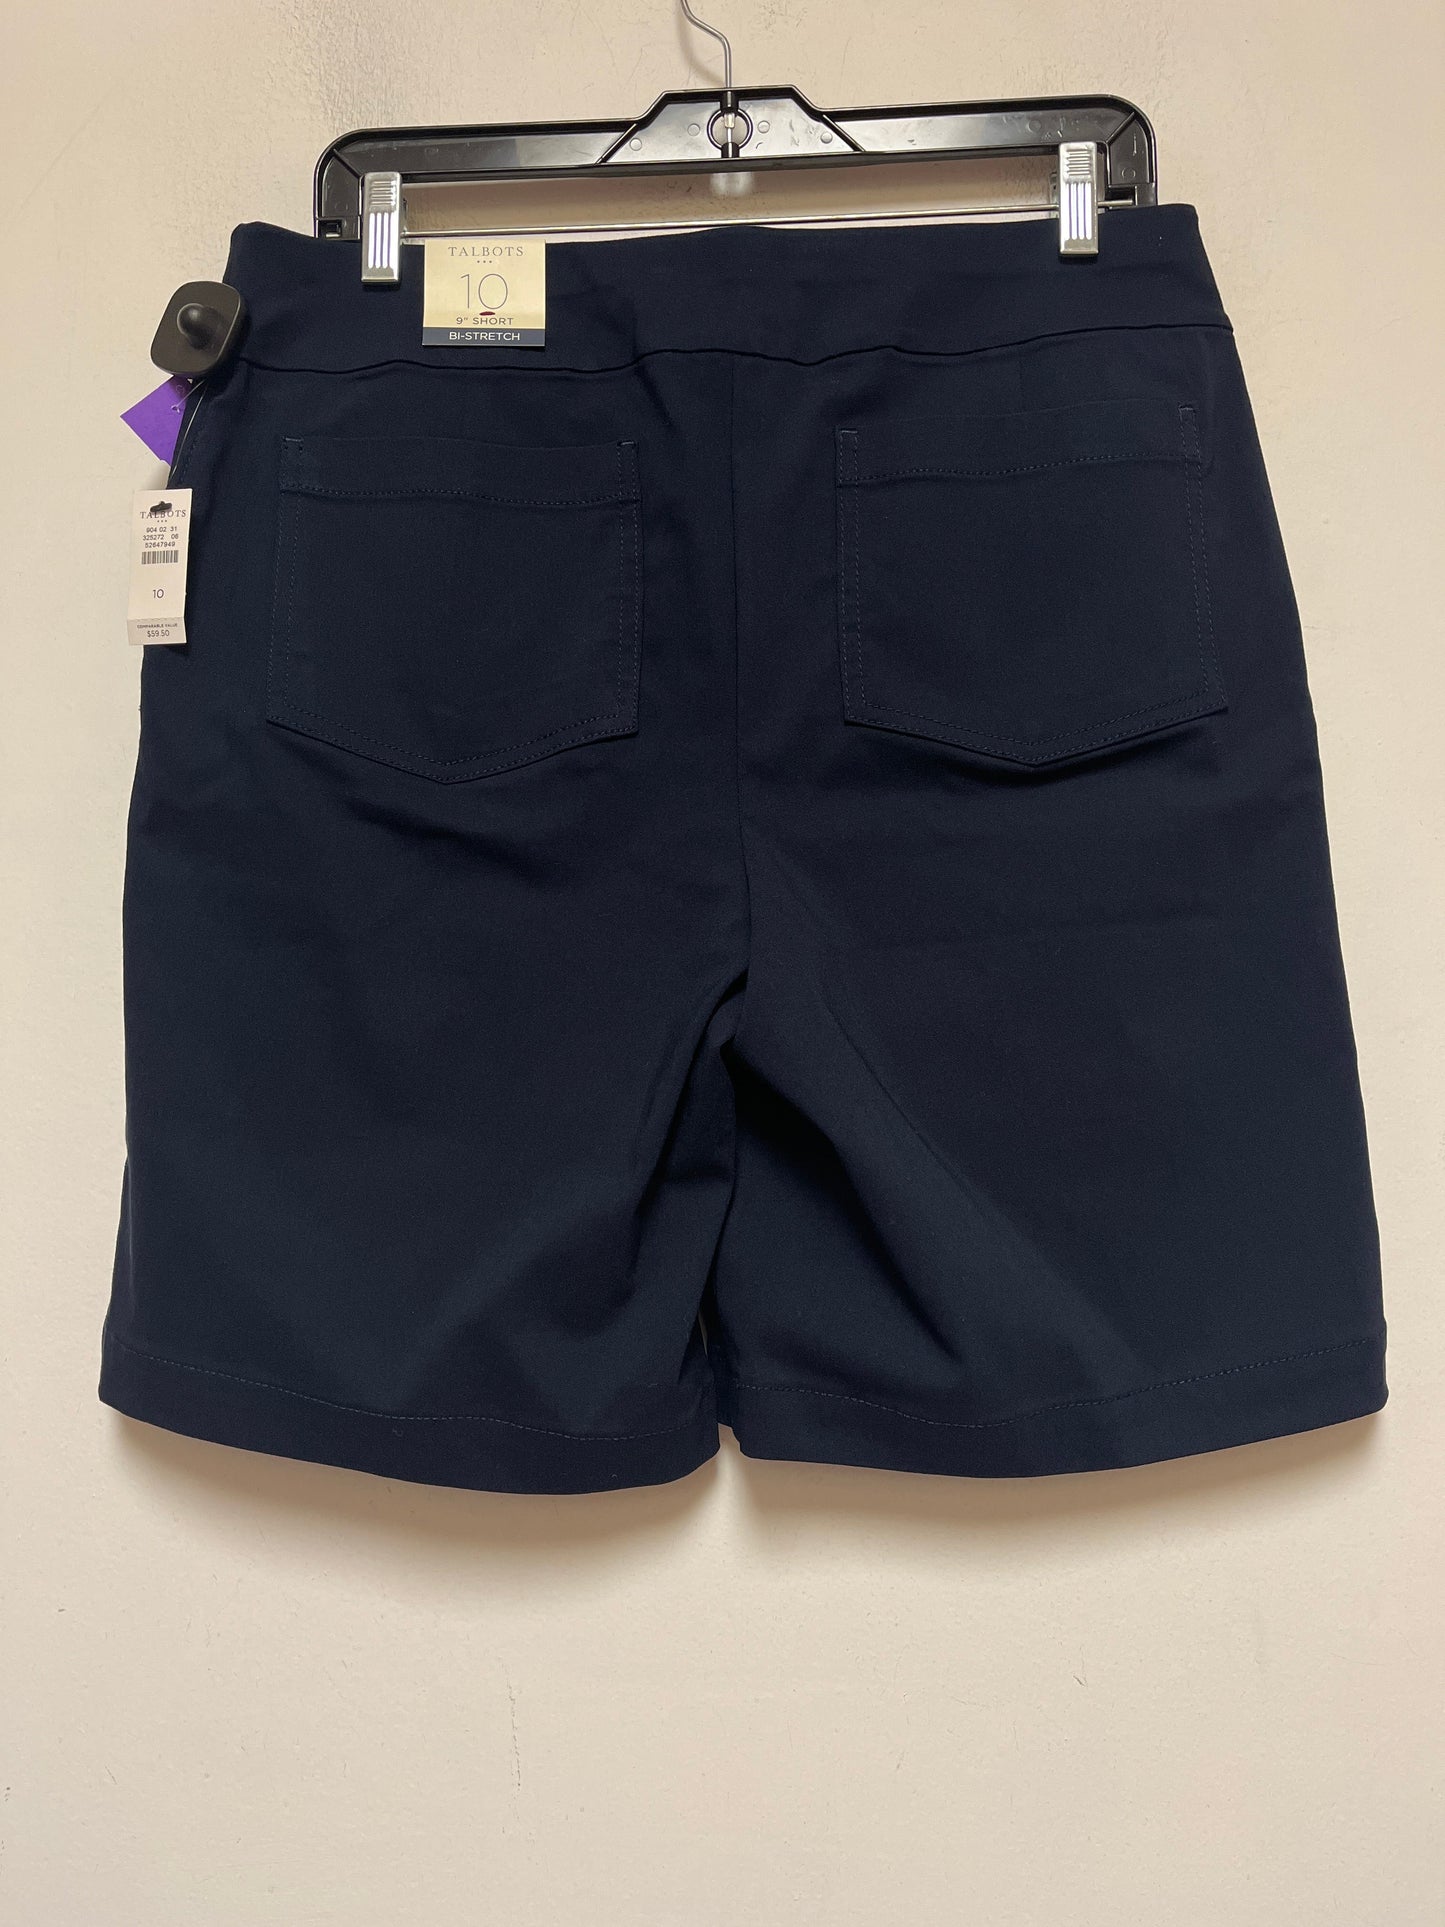 Navy Shorts Talbots, Size 10